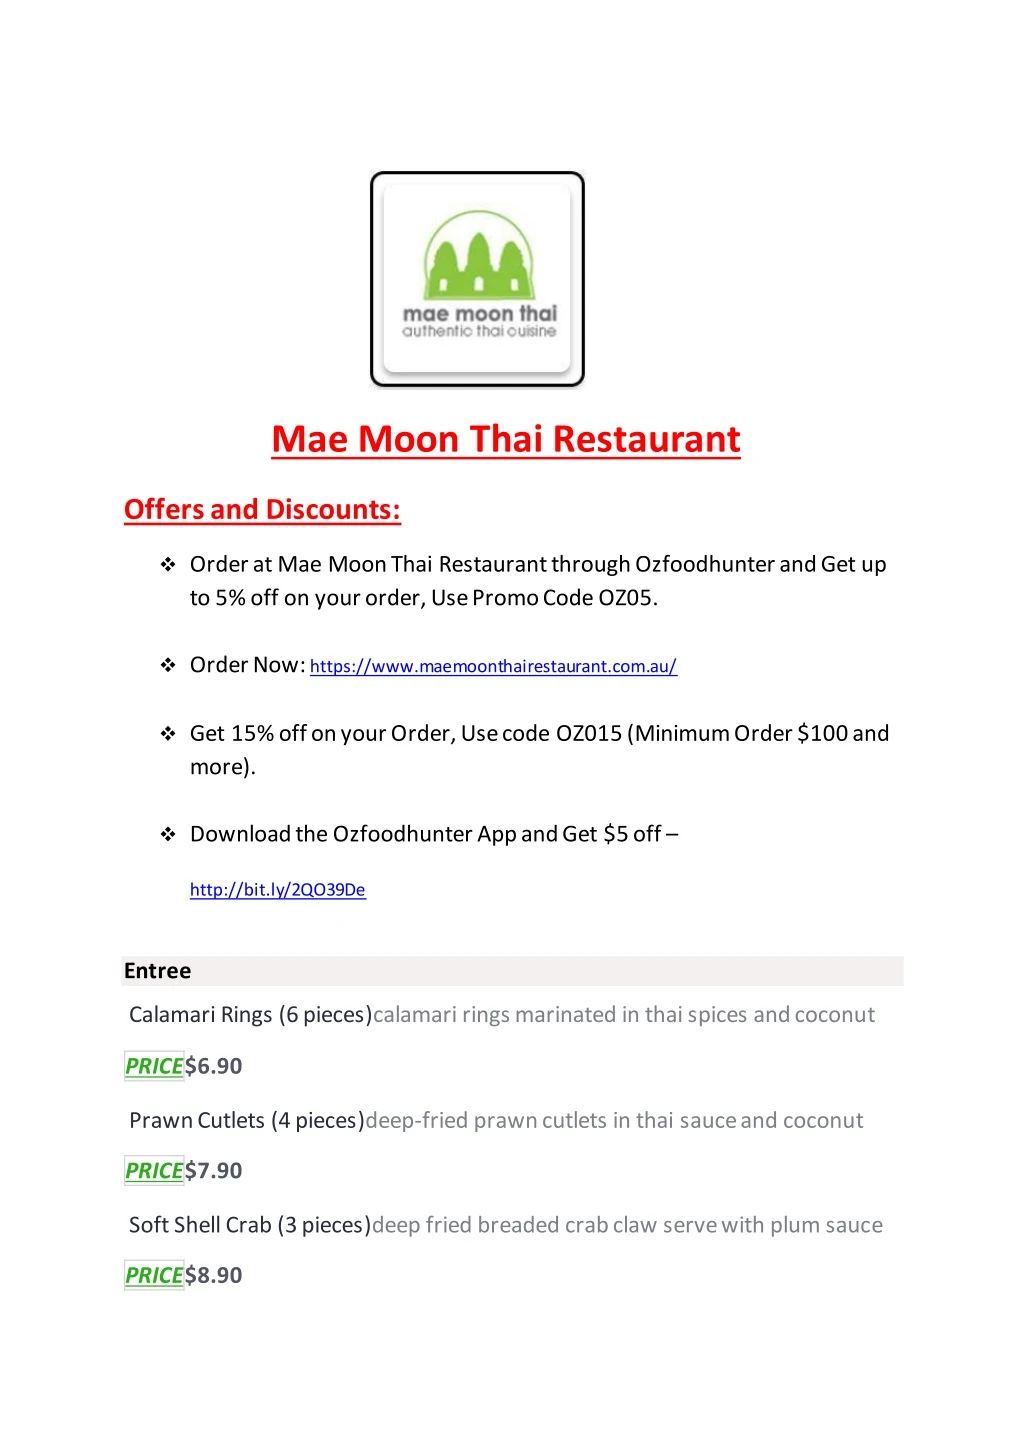 mae moon thai restaurant